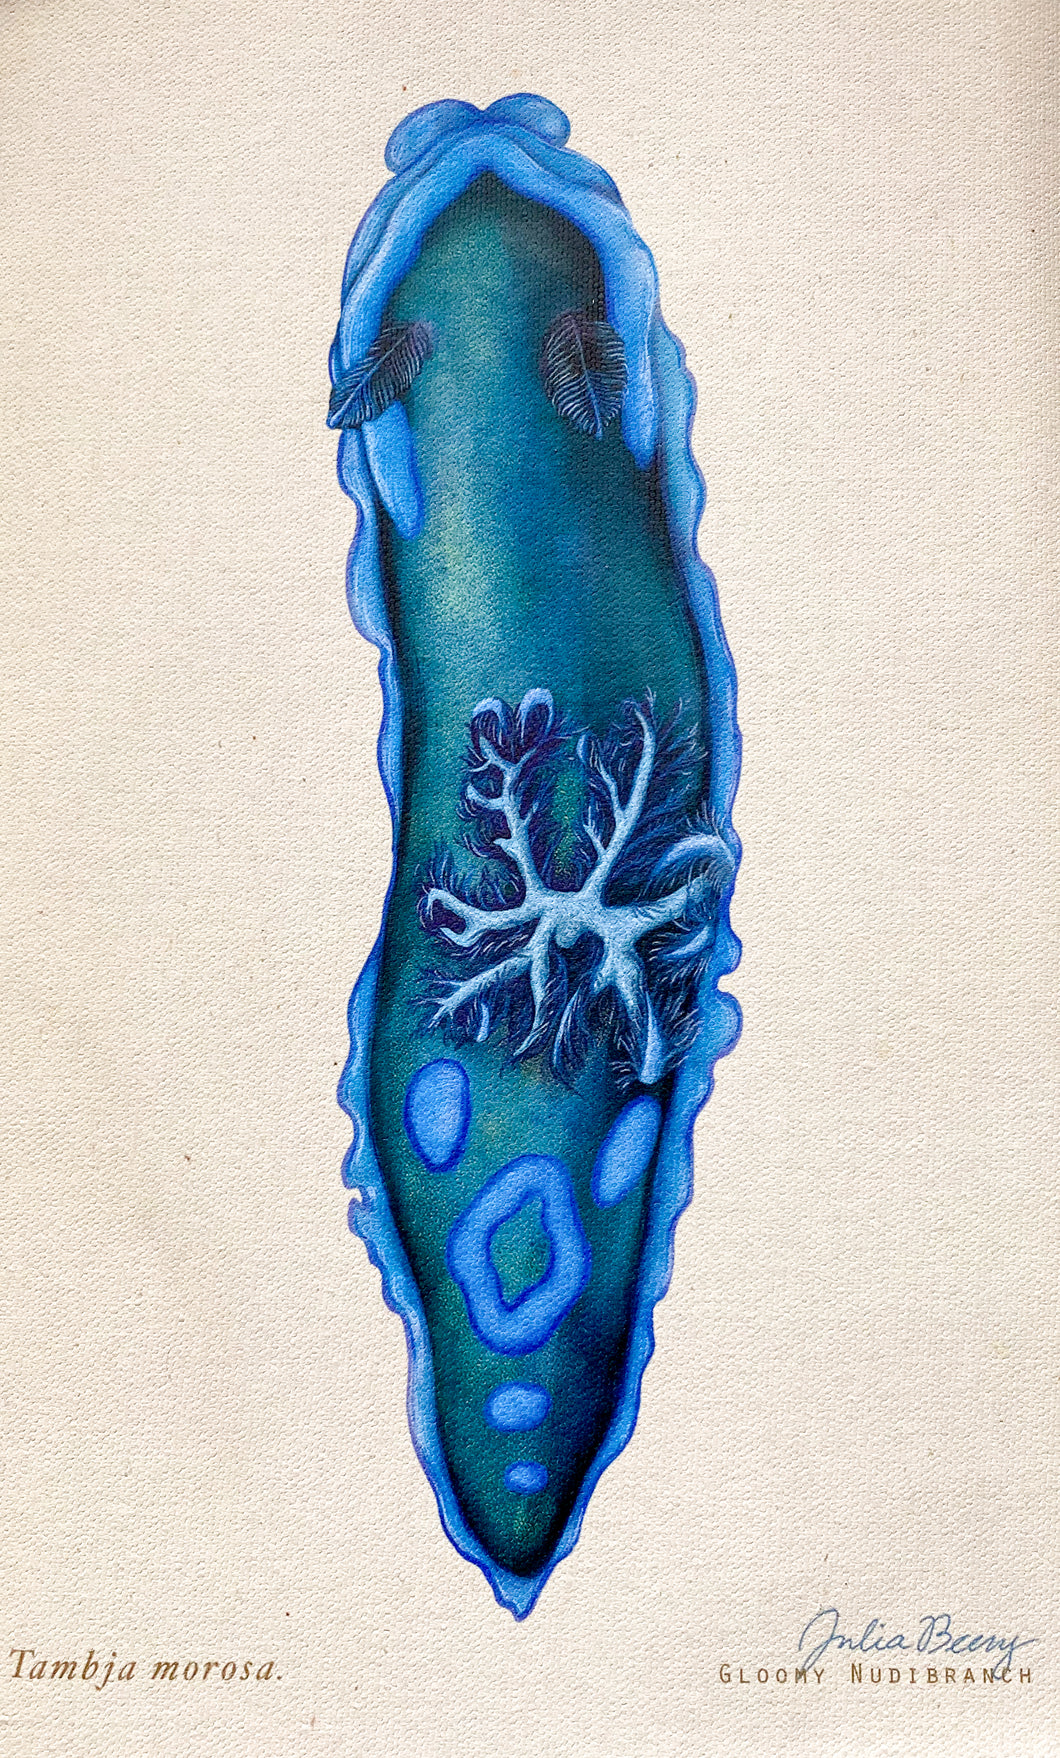 Gloomy Nudibranch (Tambja morosa) Giclée Print